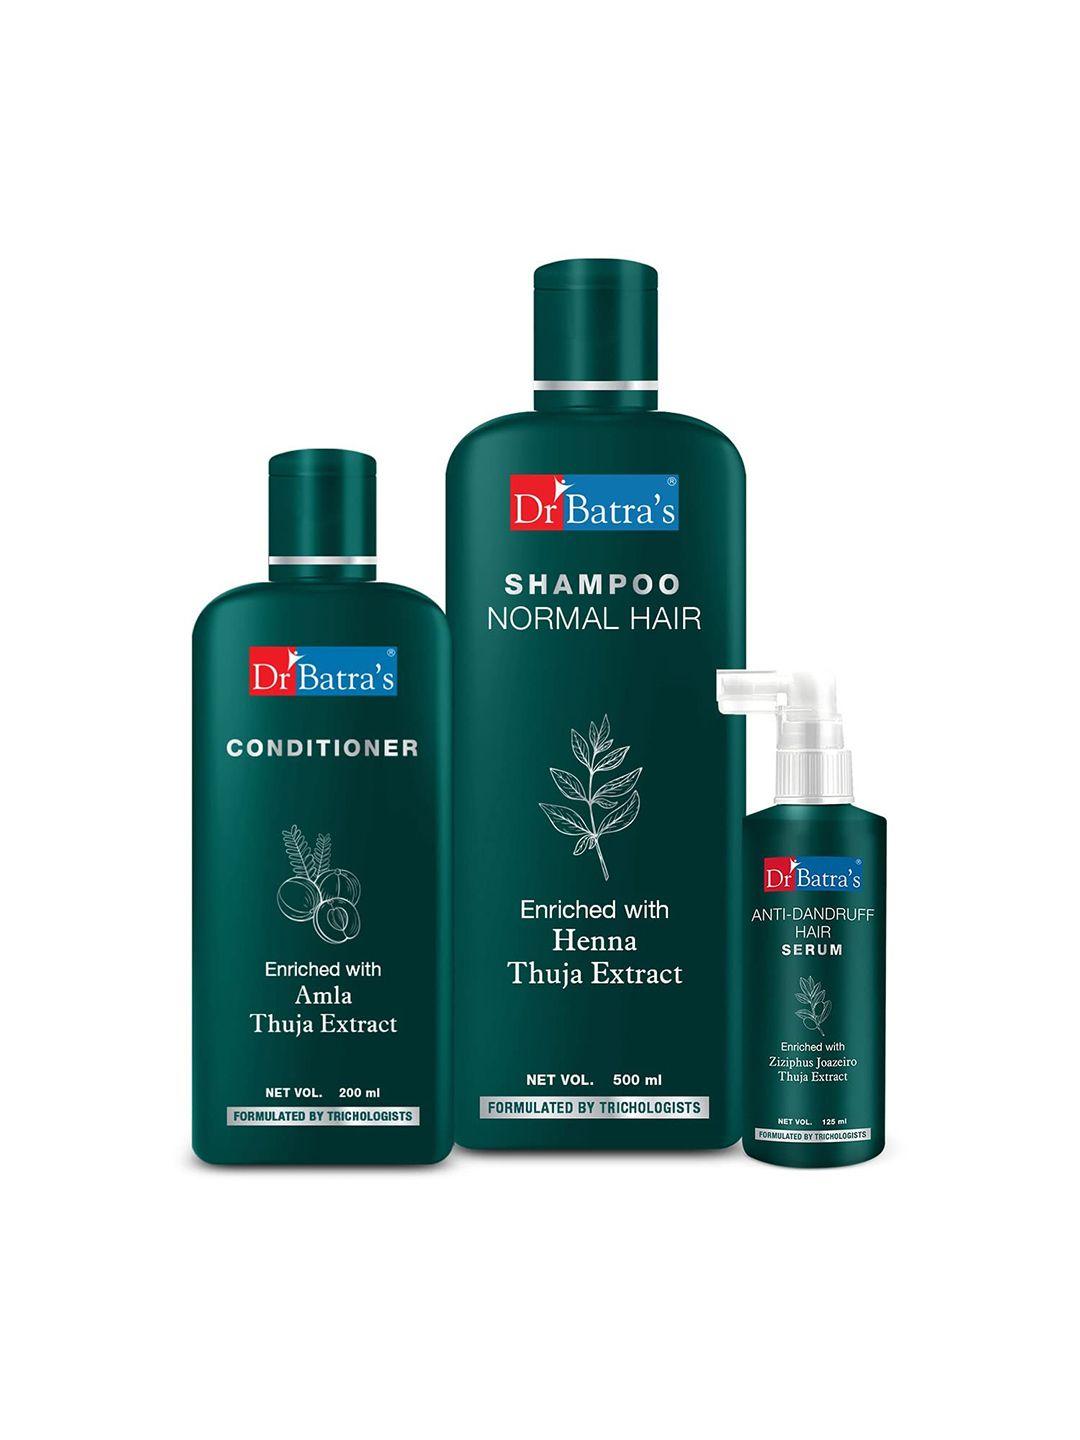 dr.-batras-anti-dandruff-hair-serum-125ml-+-conditioner-200ml-&-normal-hair-shampoo-500ml